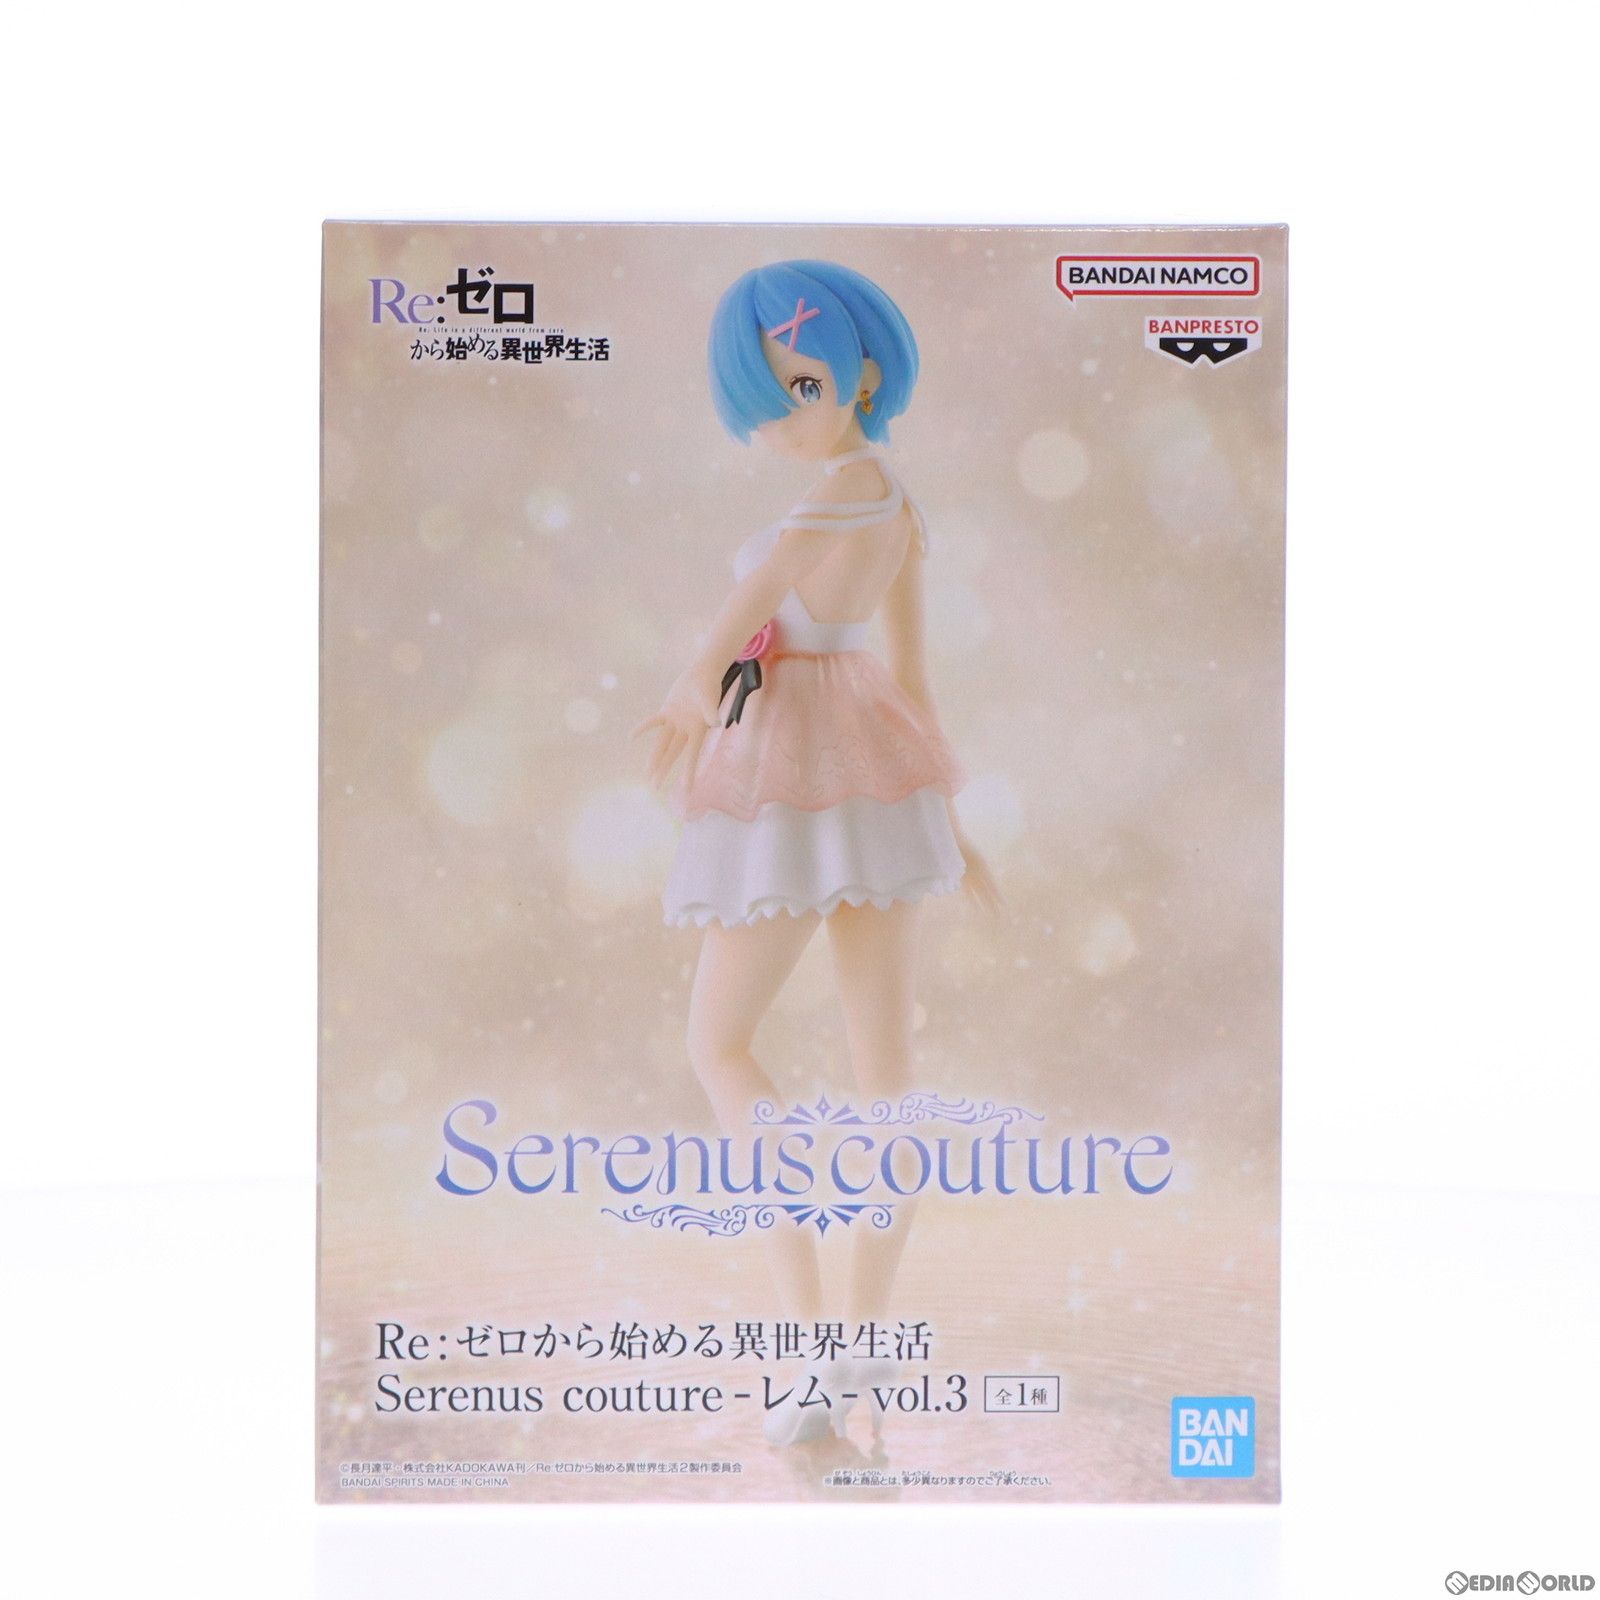 レム Re:ゼロから始める異世界生活 Serenus couture-レム-vol.3 フィギュア プライズ(2640079) バンプレスト